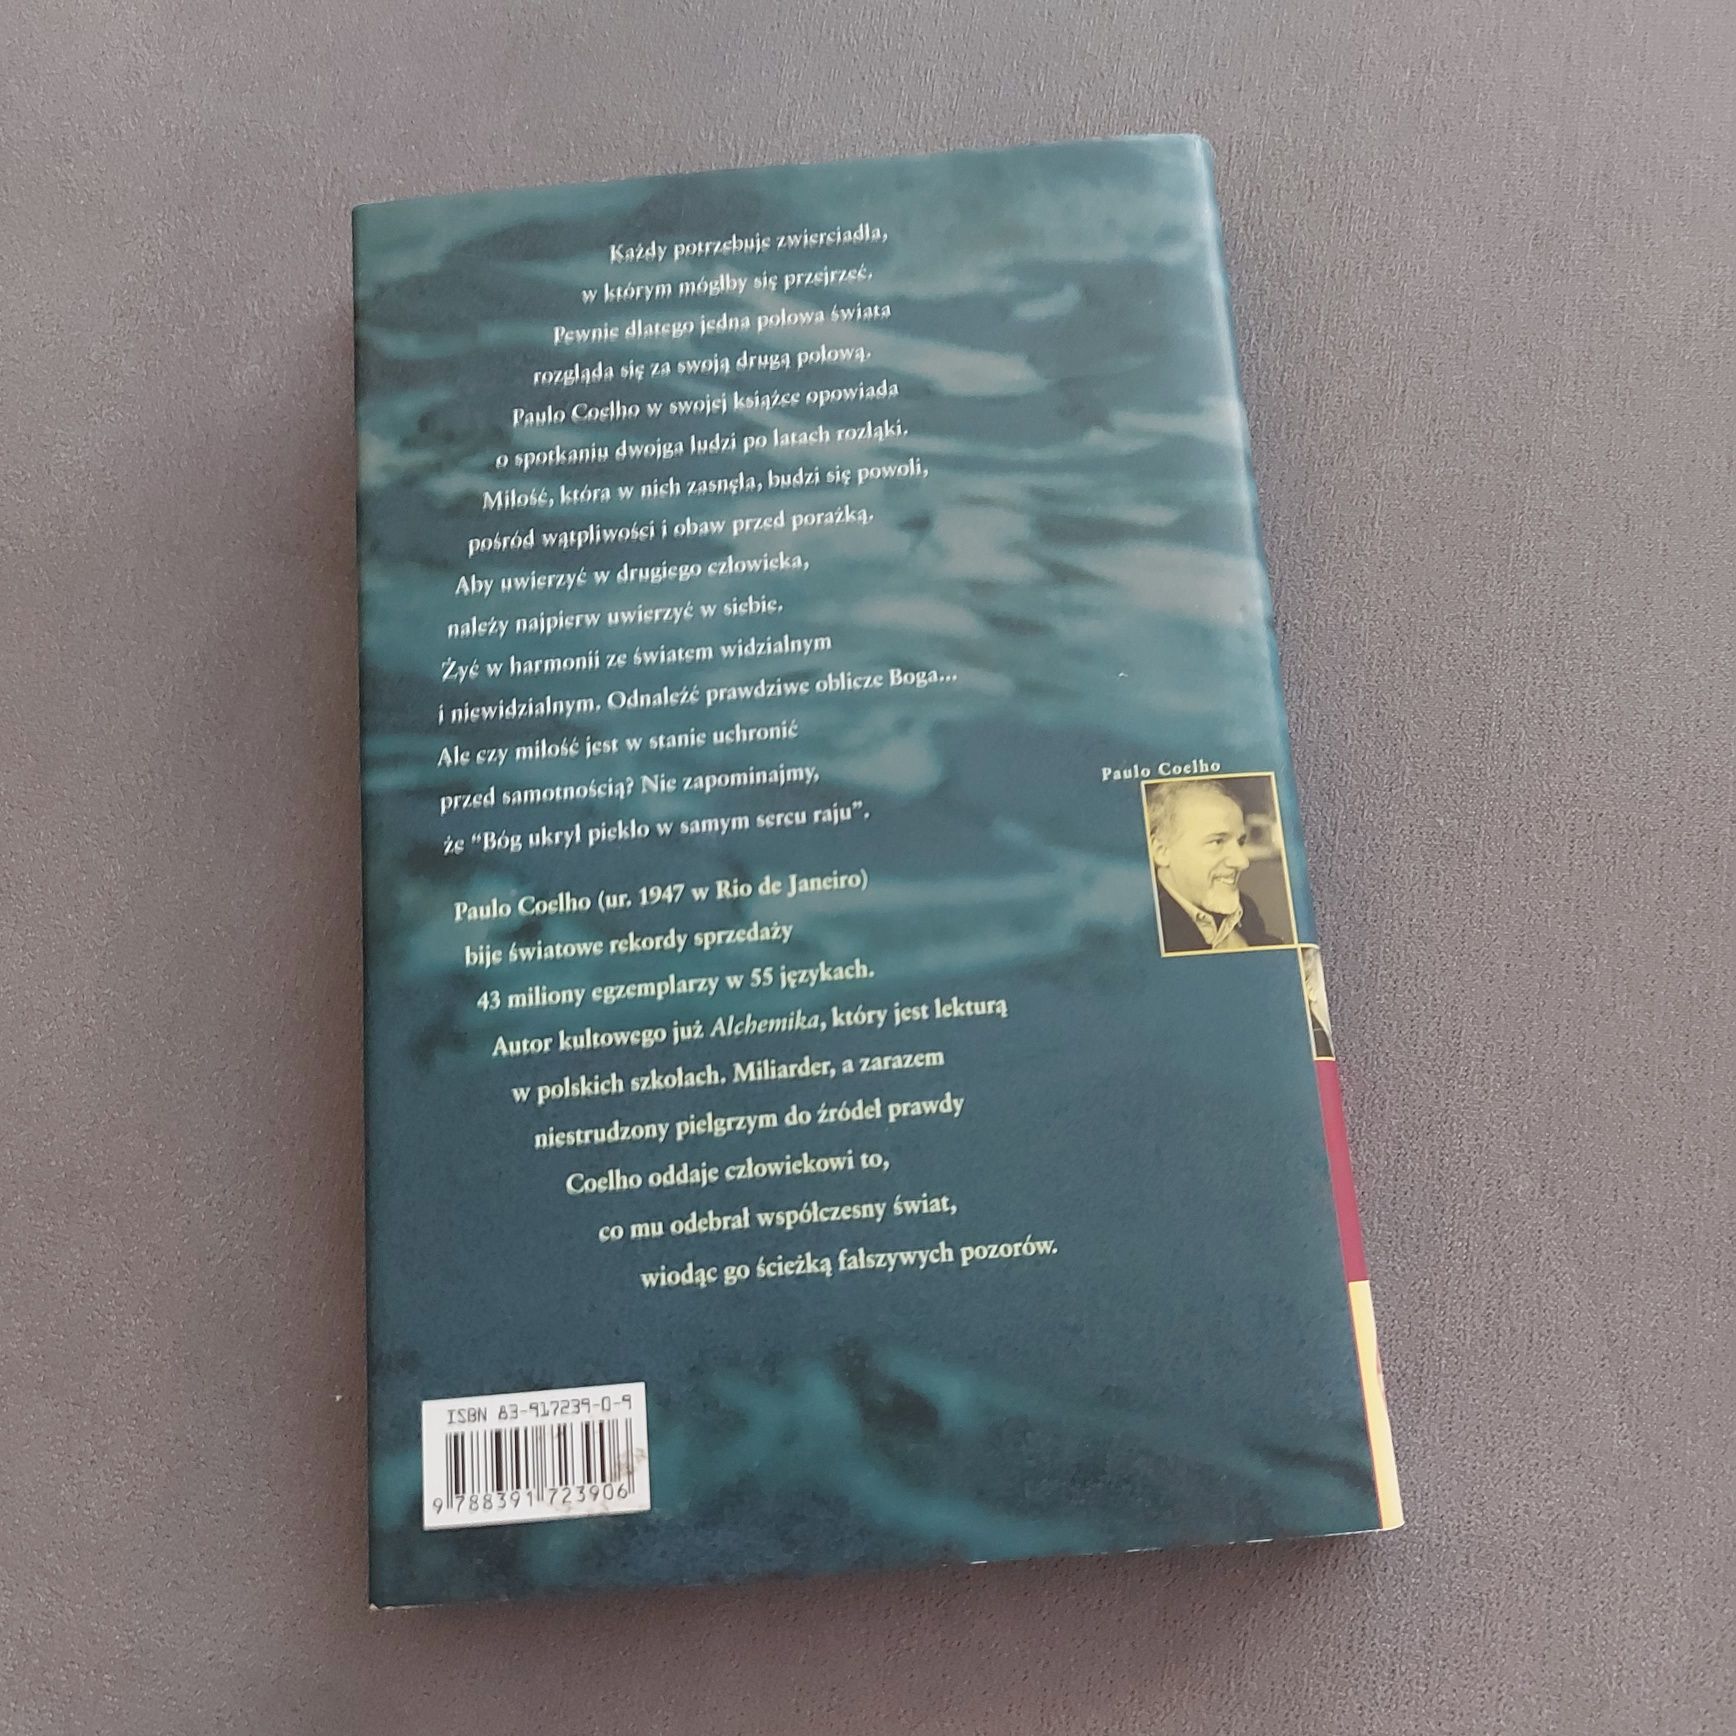 Książka Paulo Coelho na brzegu rzeki piedry usiadłam i płakałam